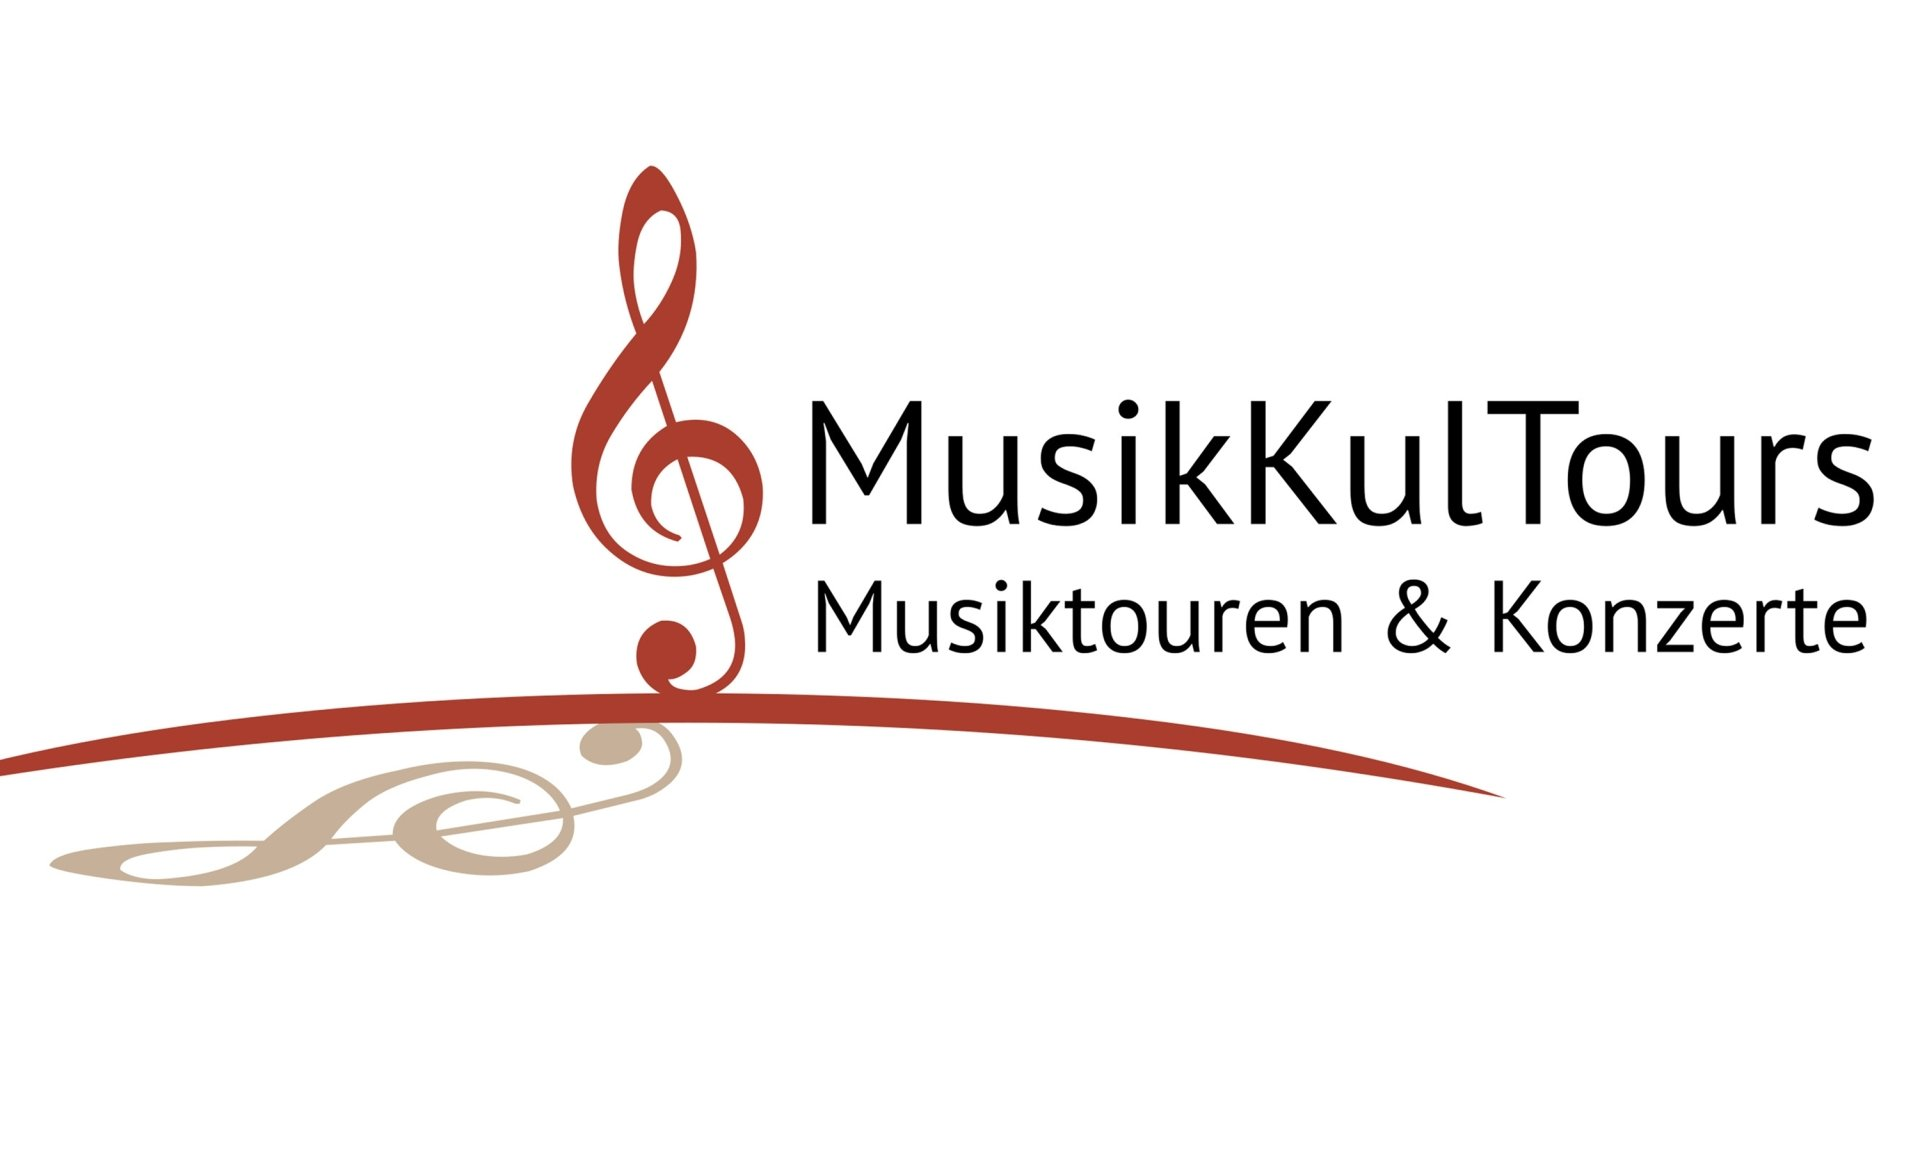 MusikKulTours